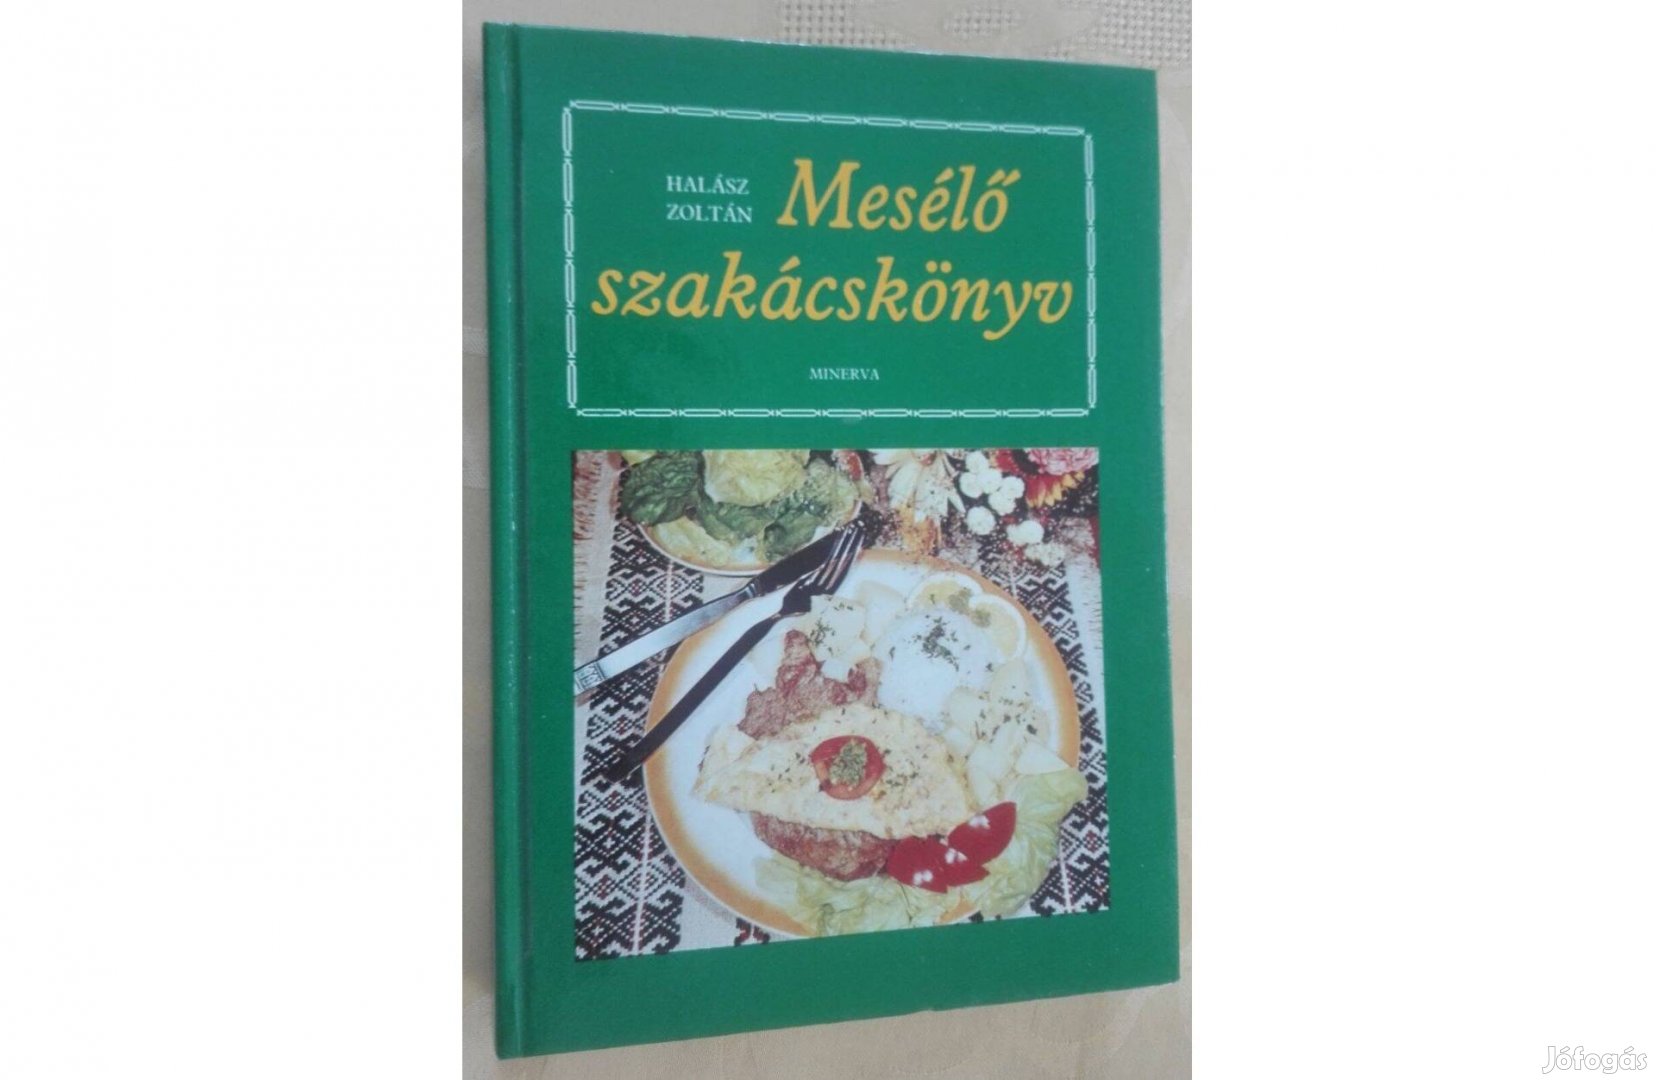 Mesélő szakácskönyv, írta: Halász Zoltán, olvasatlan